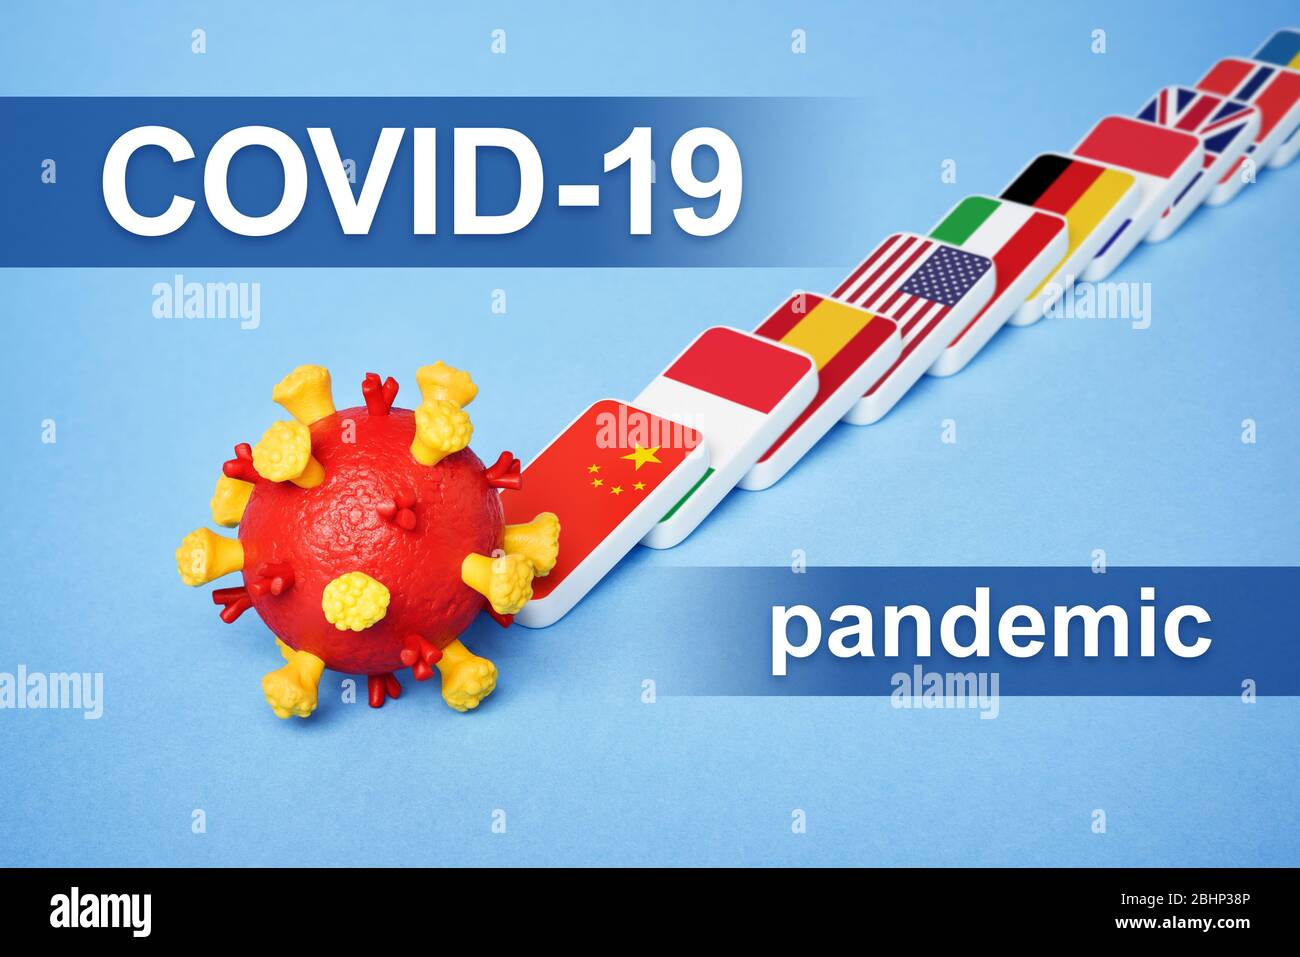 Maladie du coronavirus COVID-19 pandémie. L'effet Domino est une réaction en chaîne de la propagation du virus dans le monde. Surchargée du système de santé Banque D'Images